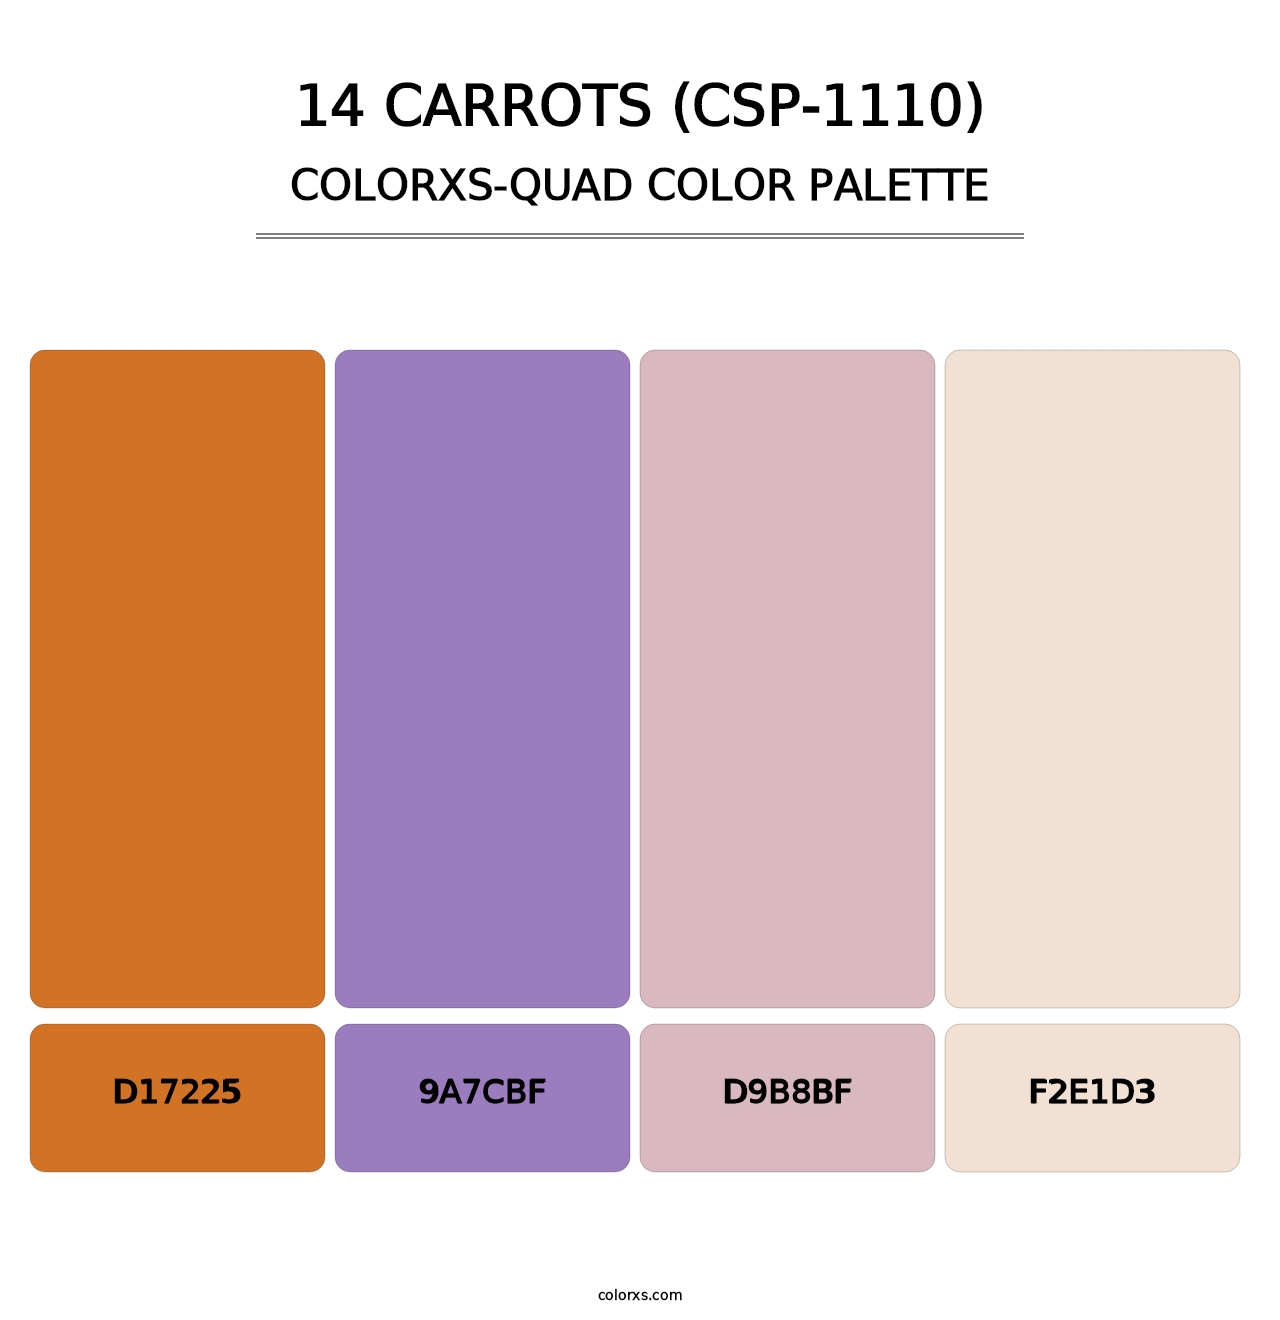 14 Carrots (CSP-1110) - Colorxs Quad Palette